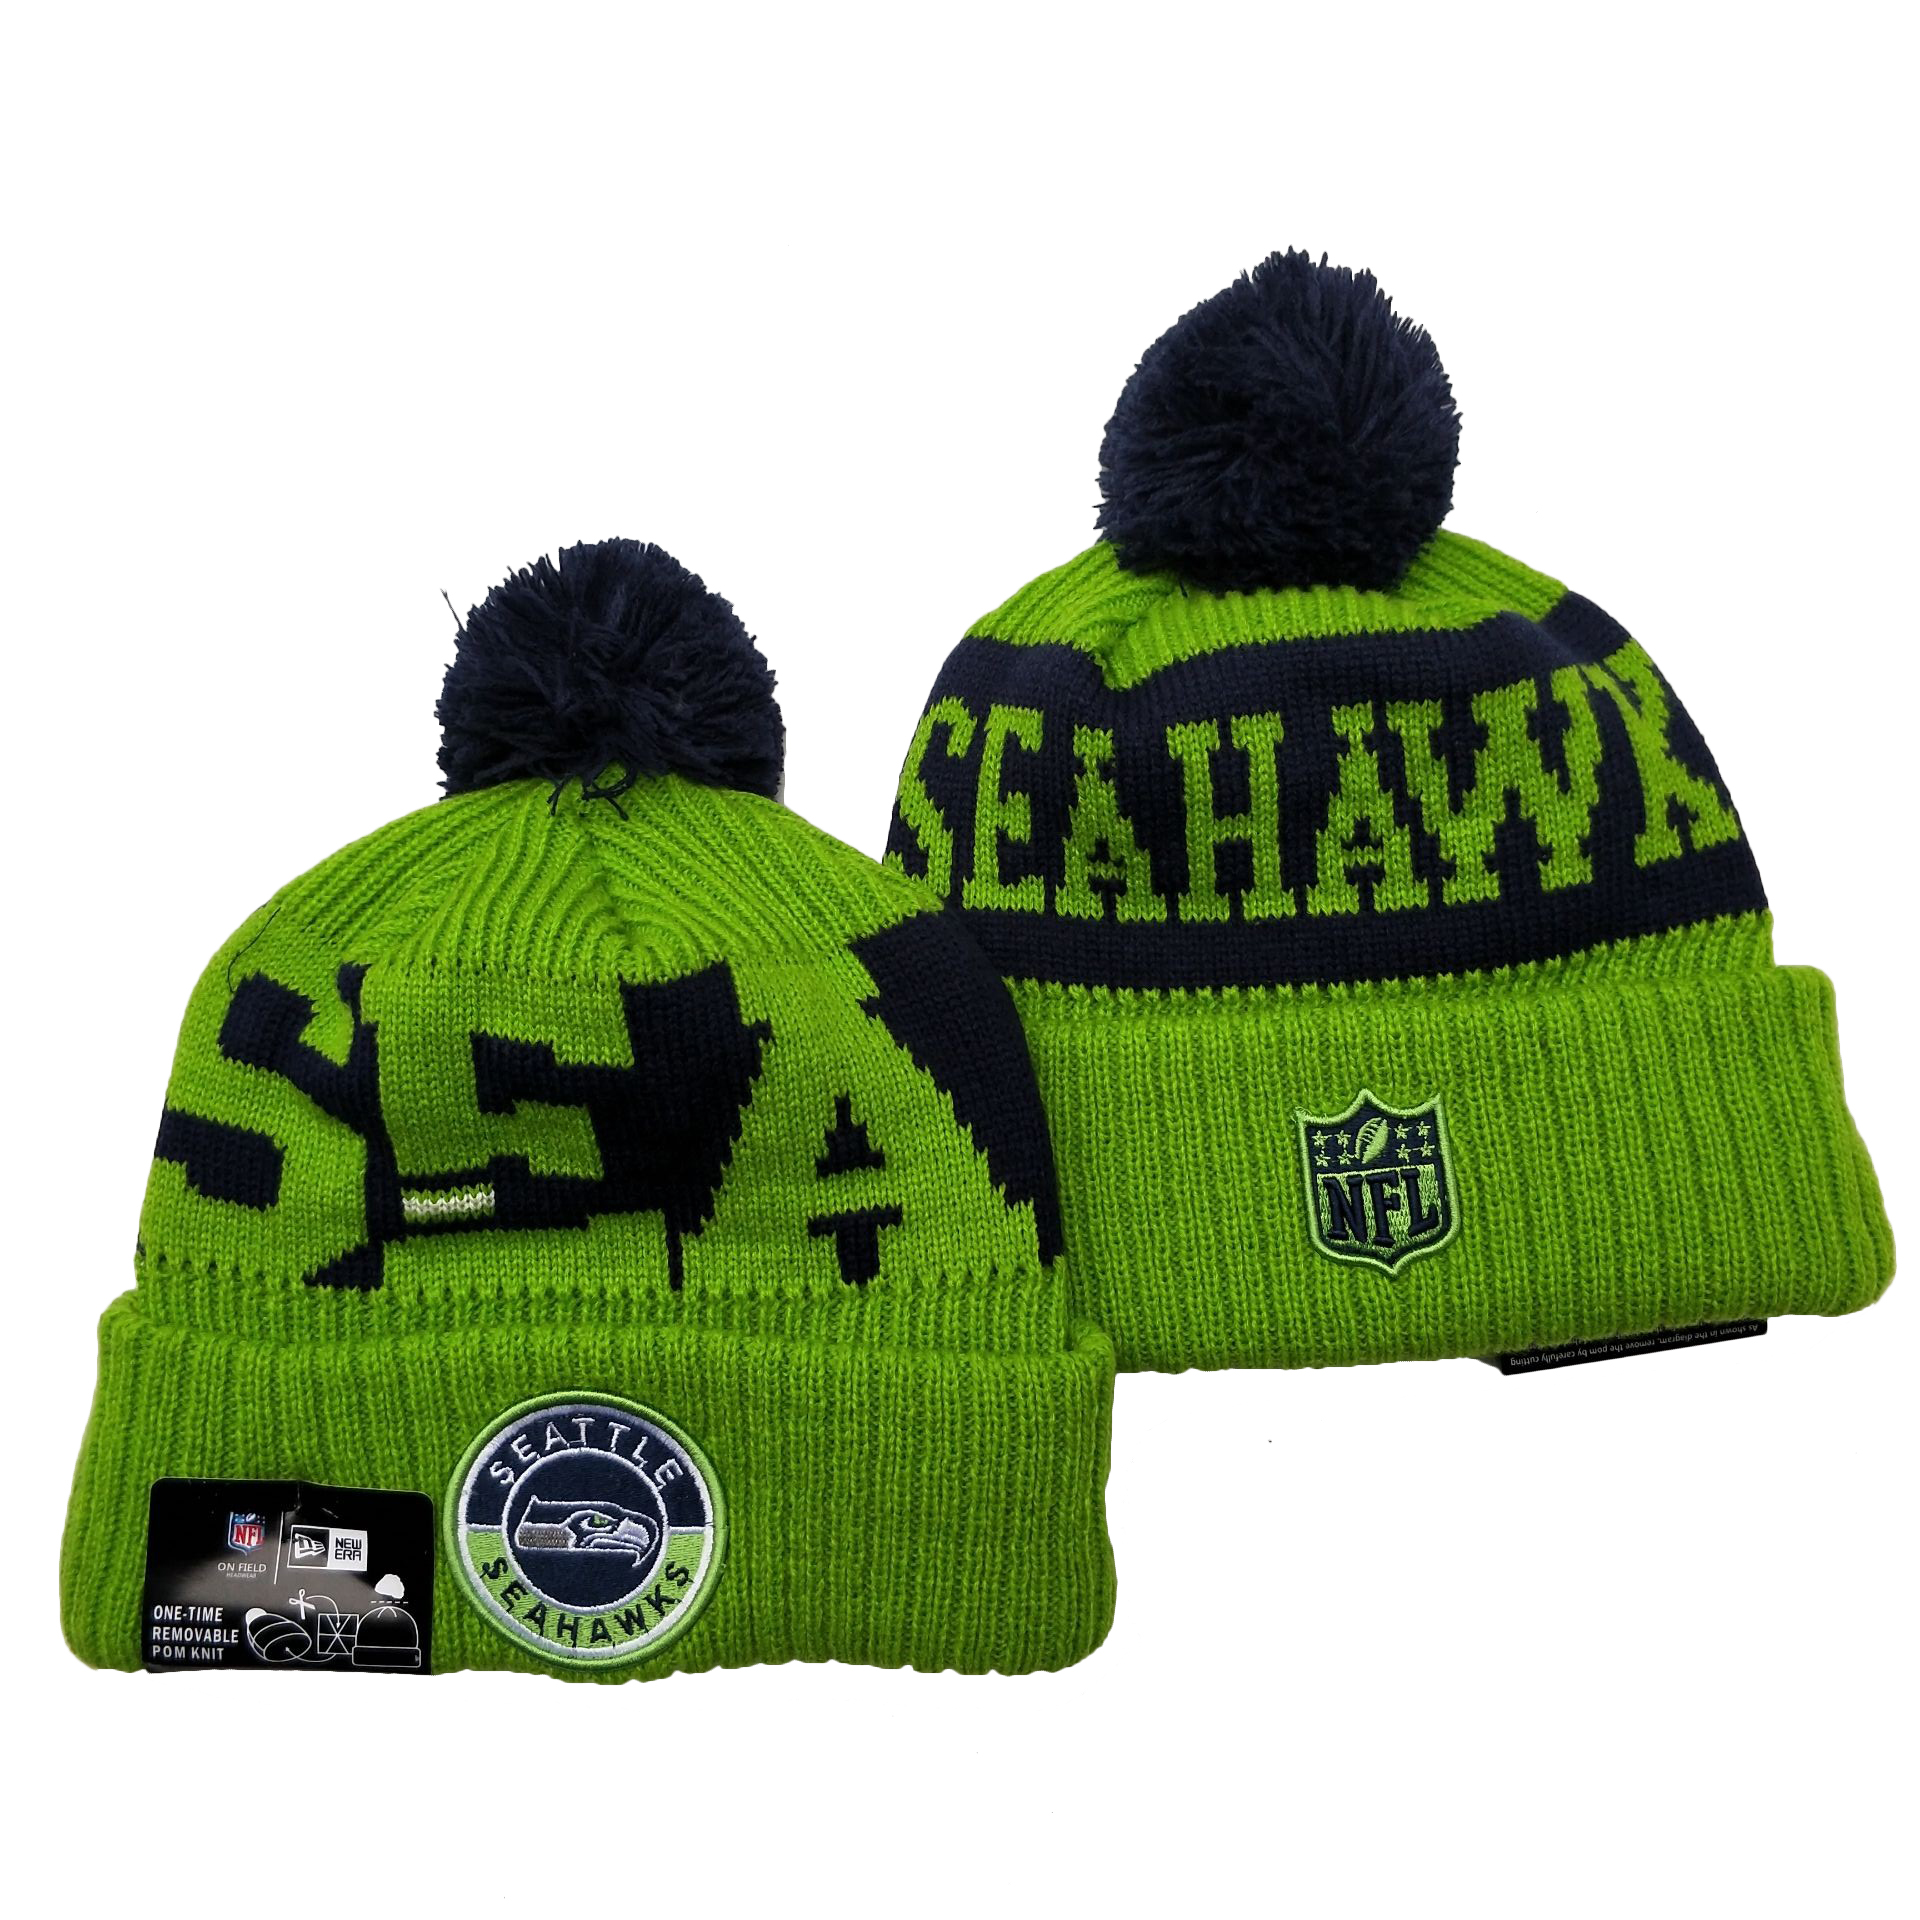 Seahawks Team Logo Green 2020 NFL Sideline Pom Cuffed Knit Hat YD